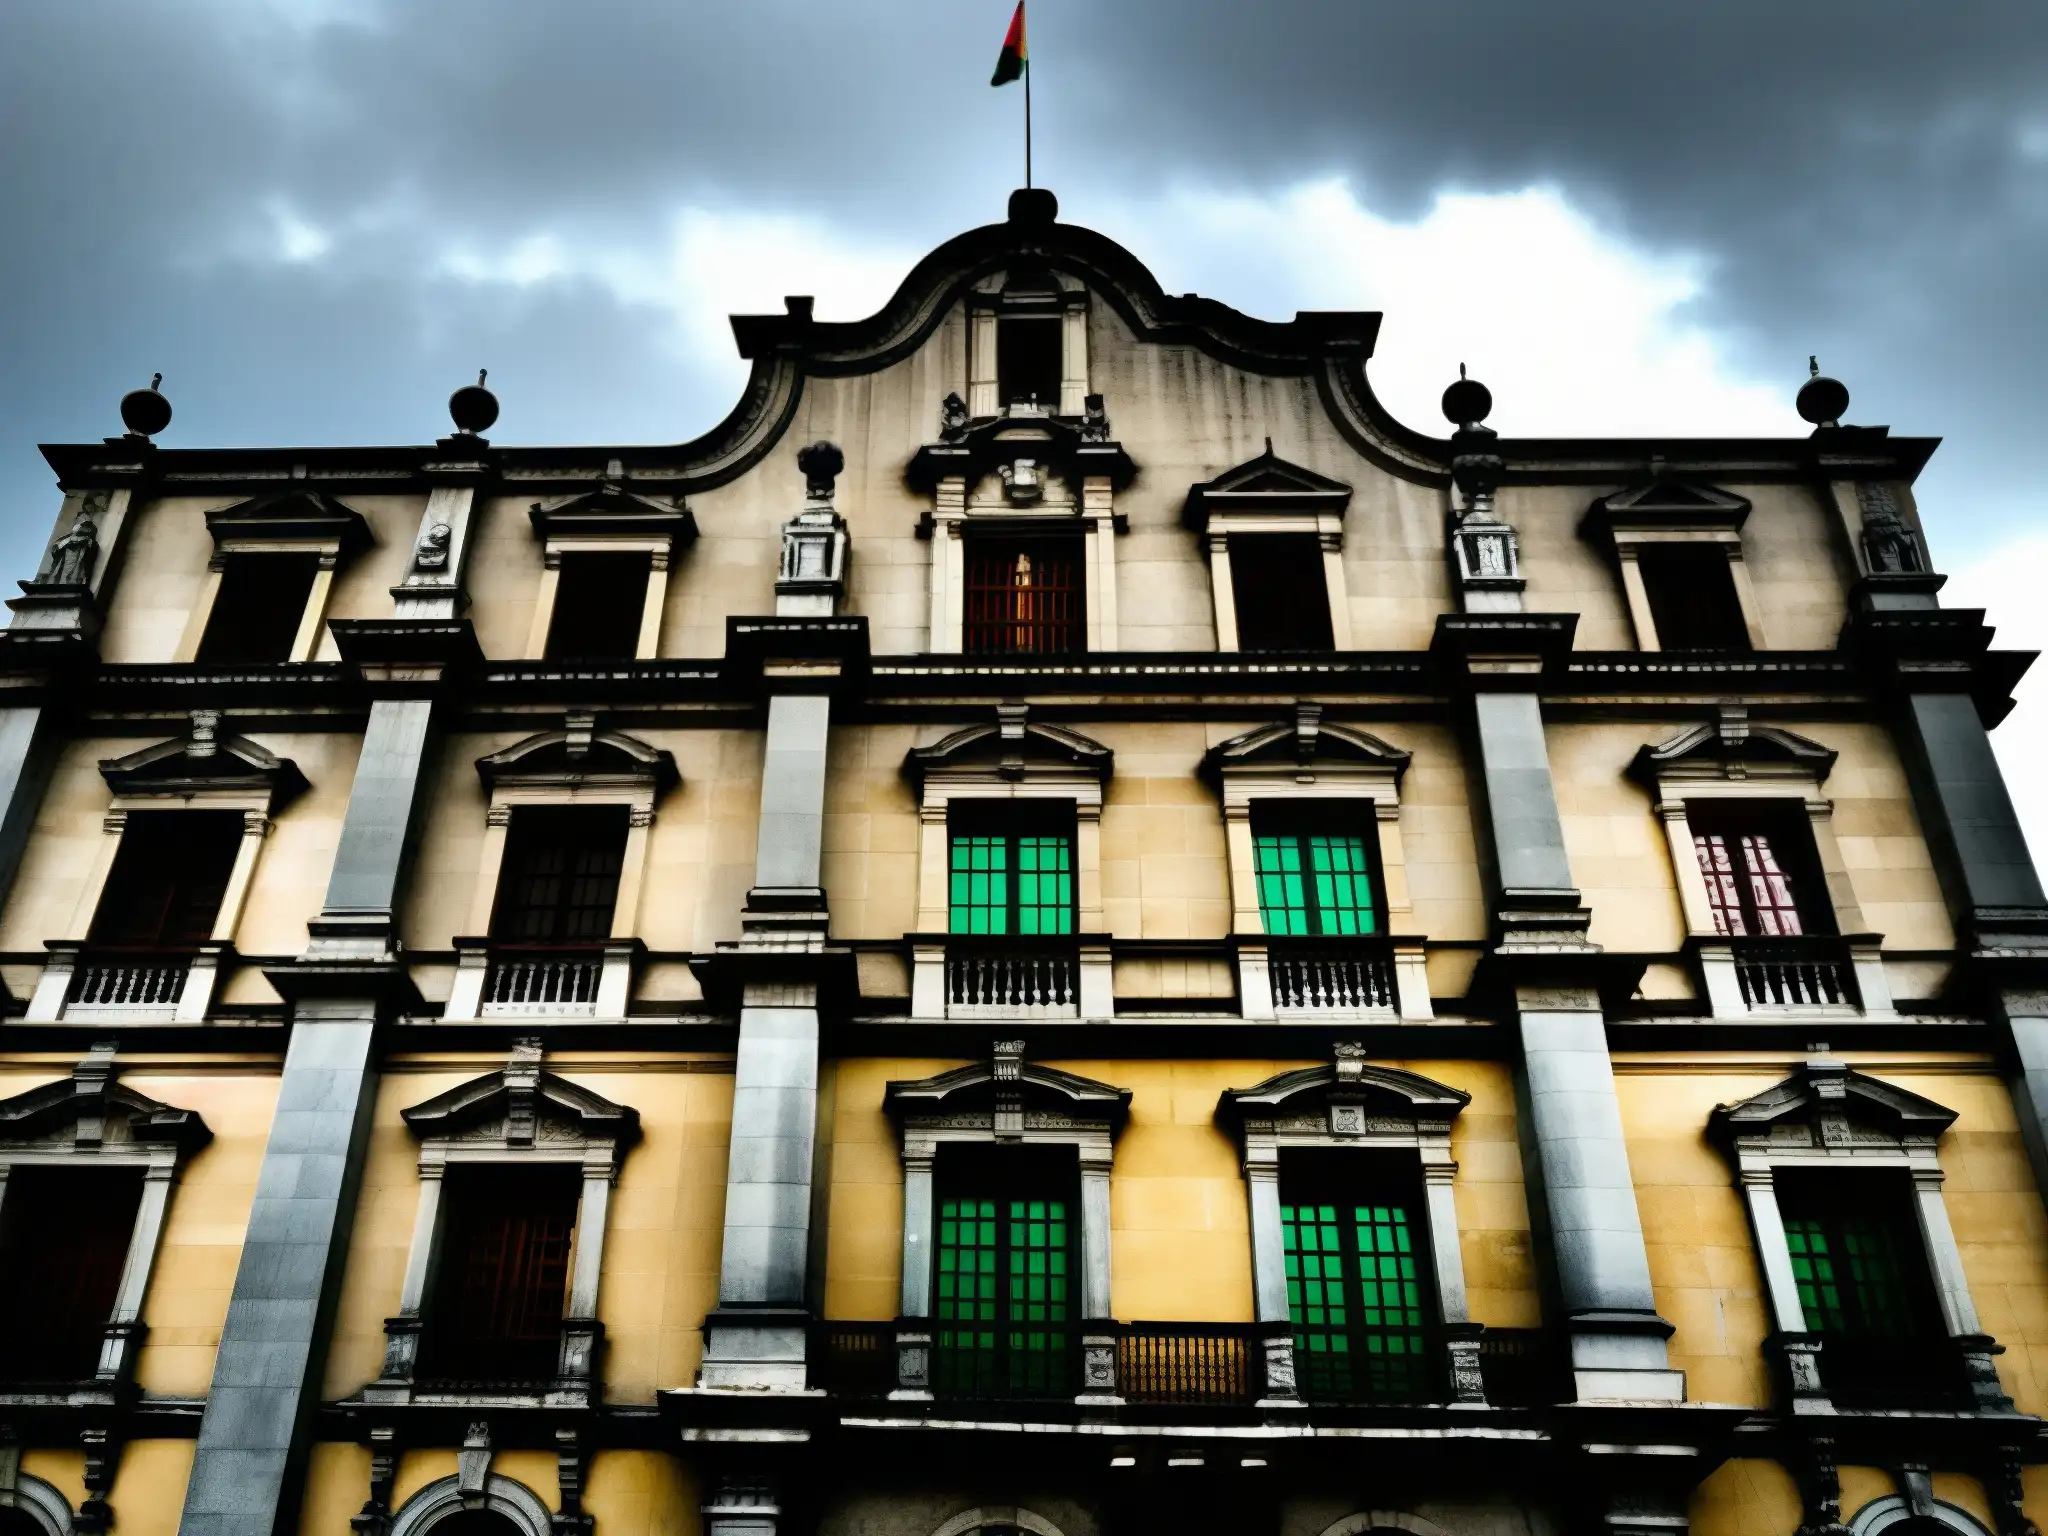 El antiguo Palacio de Lecumberri en la Ciudad de México, muestra su imponente fachada de piedra, transmitiendo misterio y grandeza